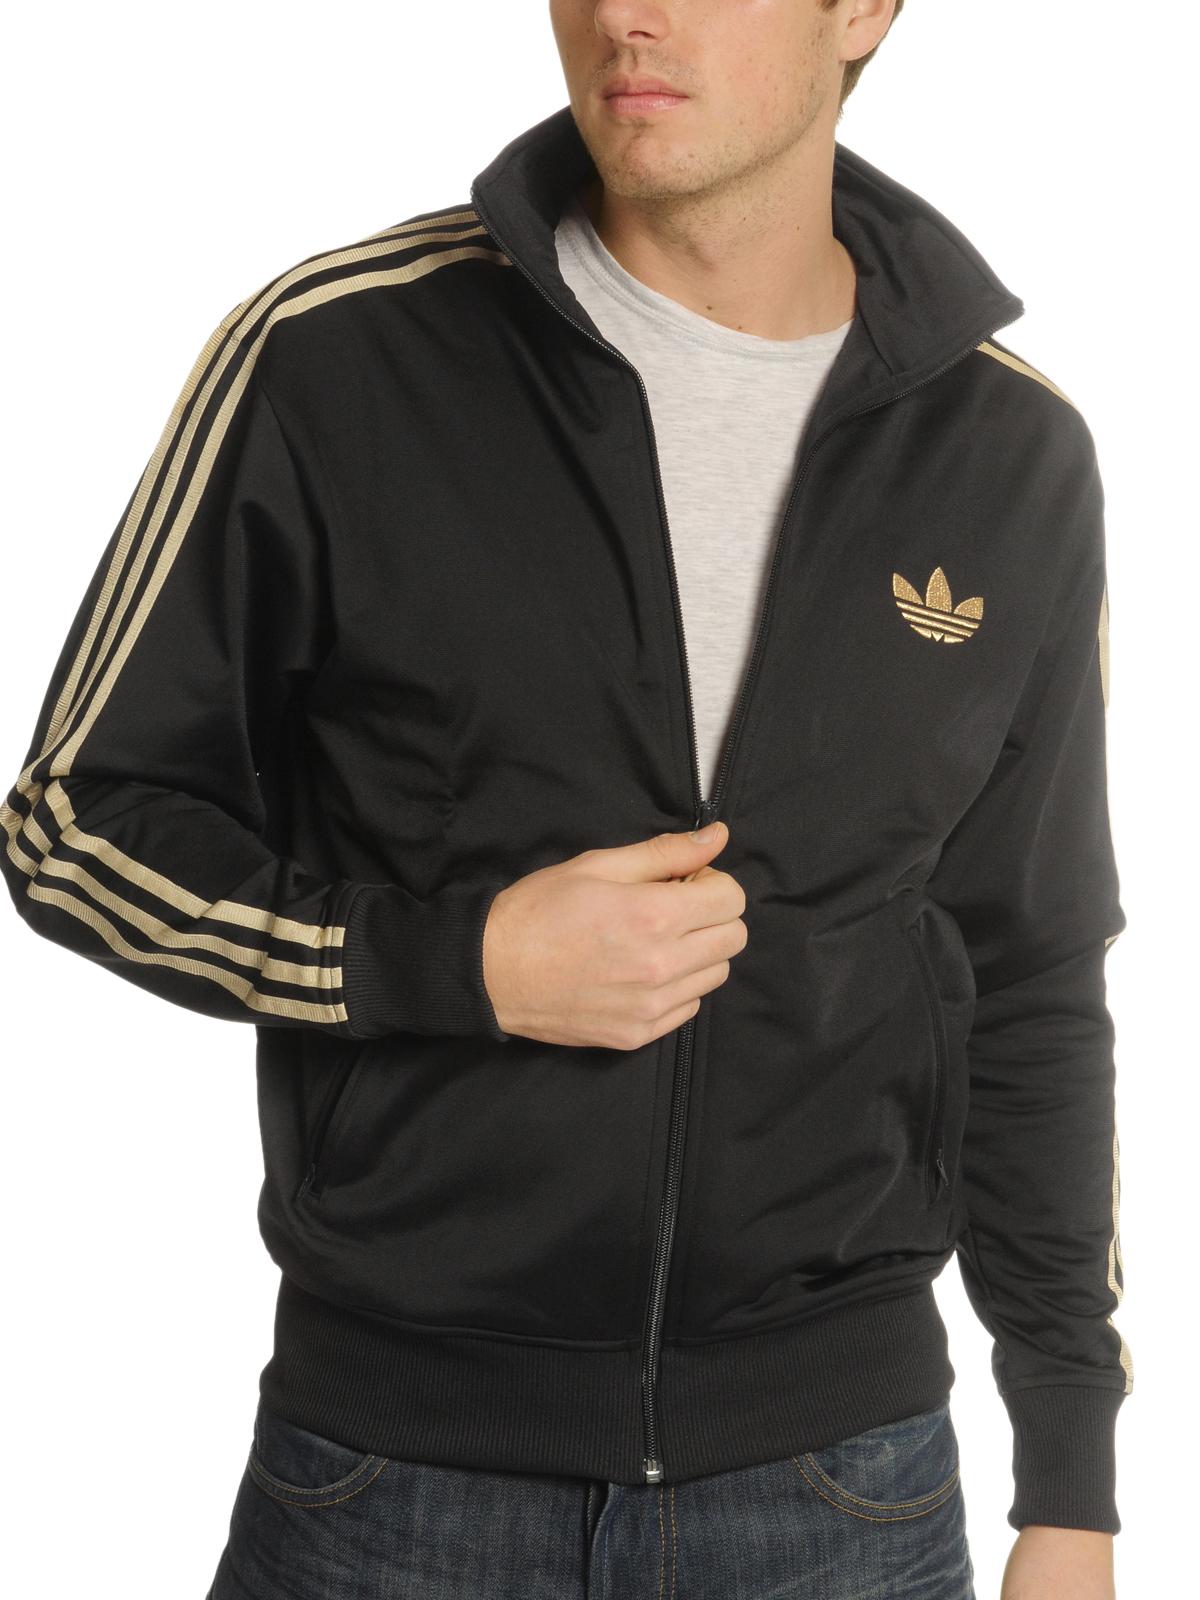 Foto Adidas Adi FB chaqueta de entrenamiento negro/oro metálico XL